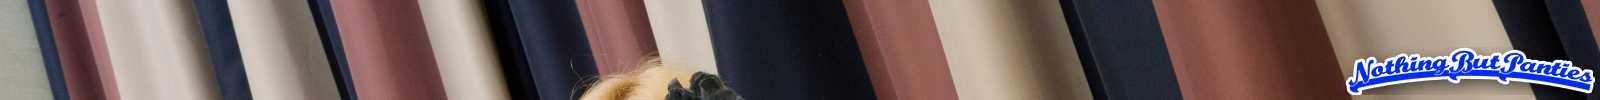 Aaliyah Liebe ist unser Flapper in ihrem schieren blauen Spitzenhöschen und ihre erstaunliche Muschi
 #72638564